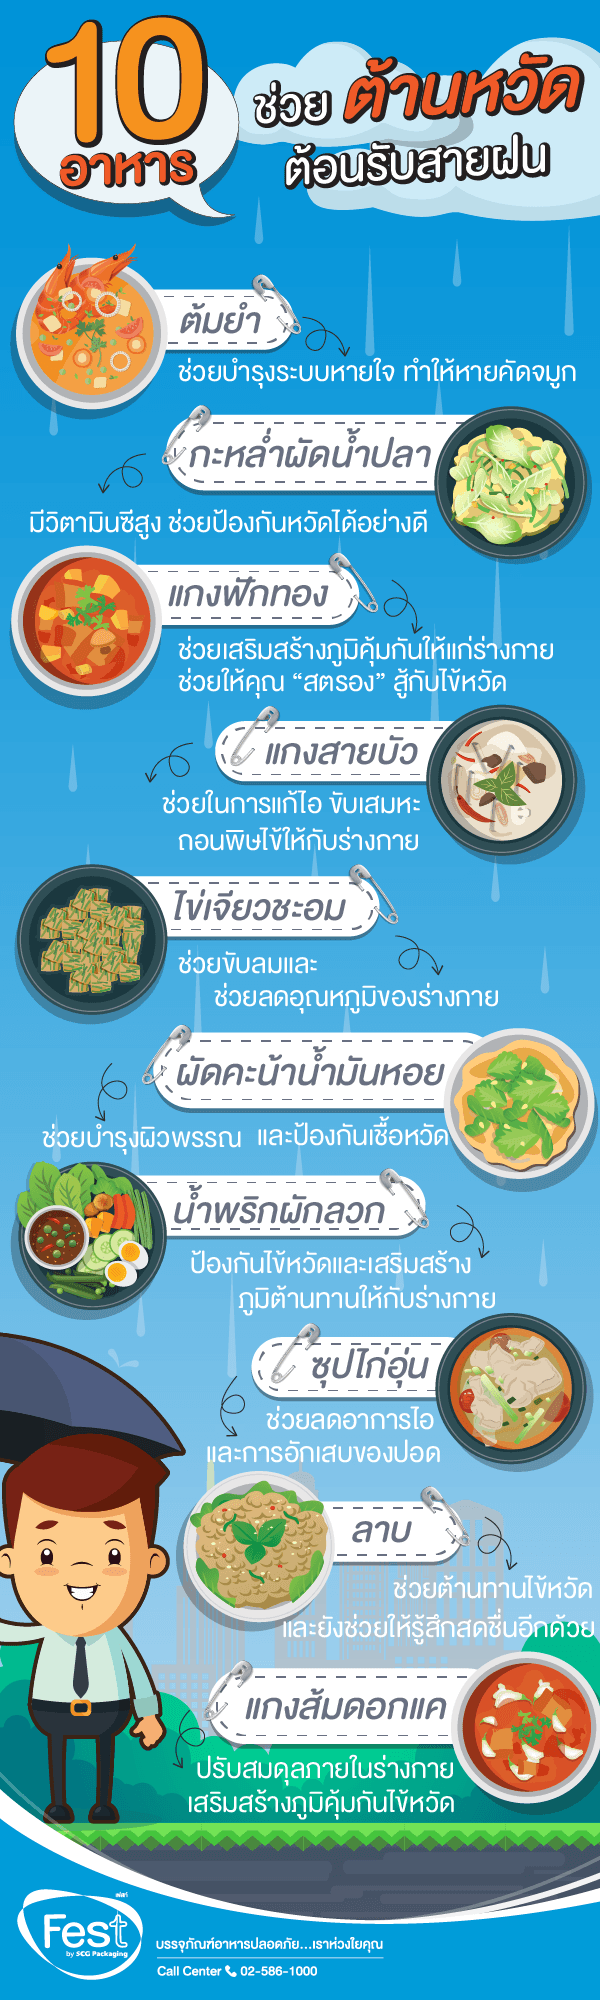 10 เมนูอาหาร ช่วยต้านหวัด ต้อนรับสายฝน | Festforfood